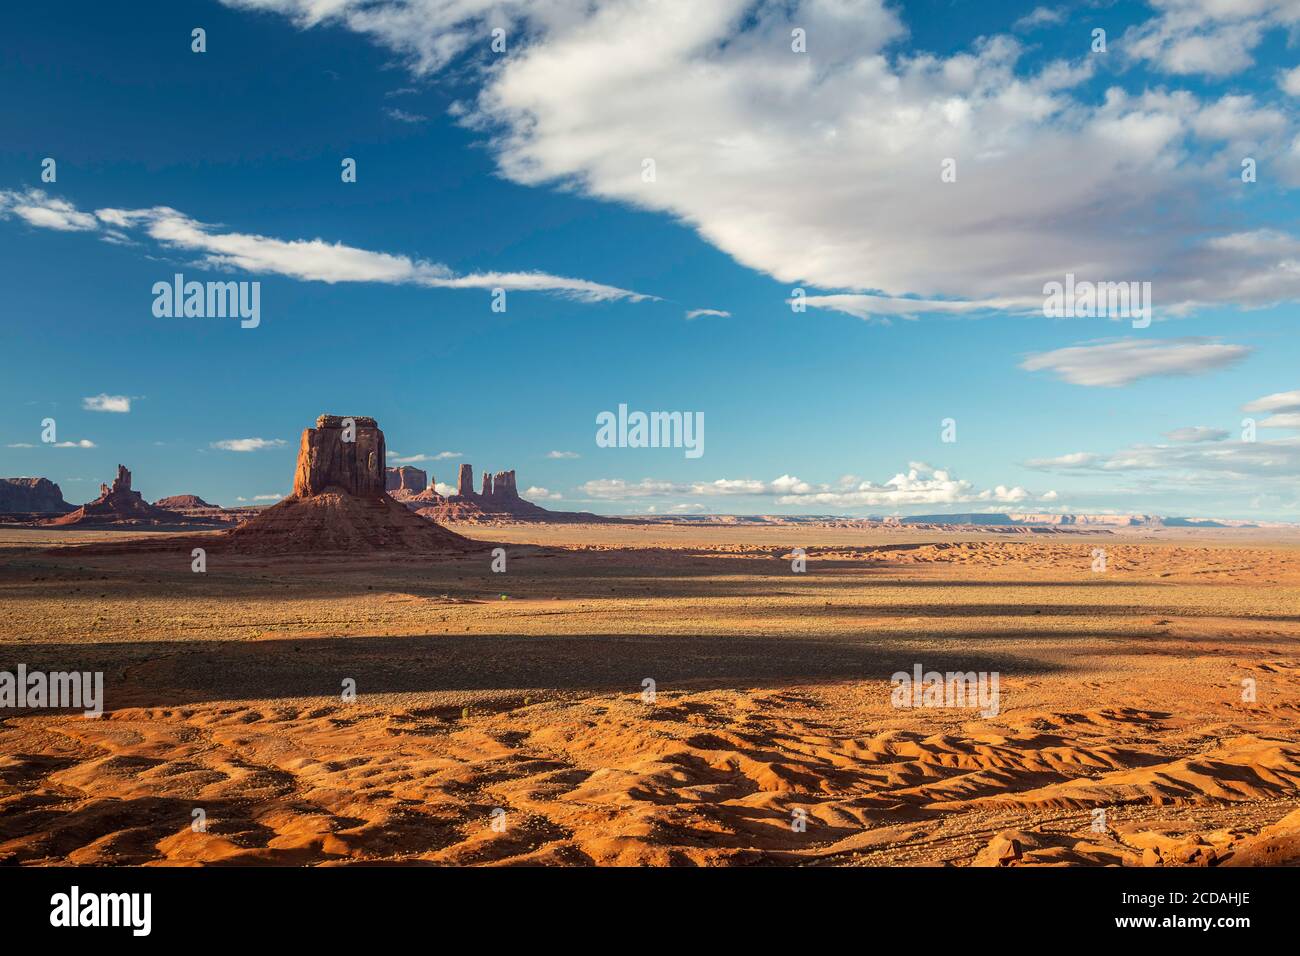 Buttes en grès de Artist's point Overlook, Monument Valley, Arizona et Utah bordent les États-Unis Banque D'Images